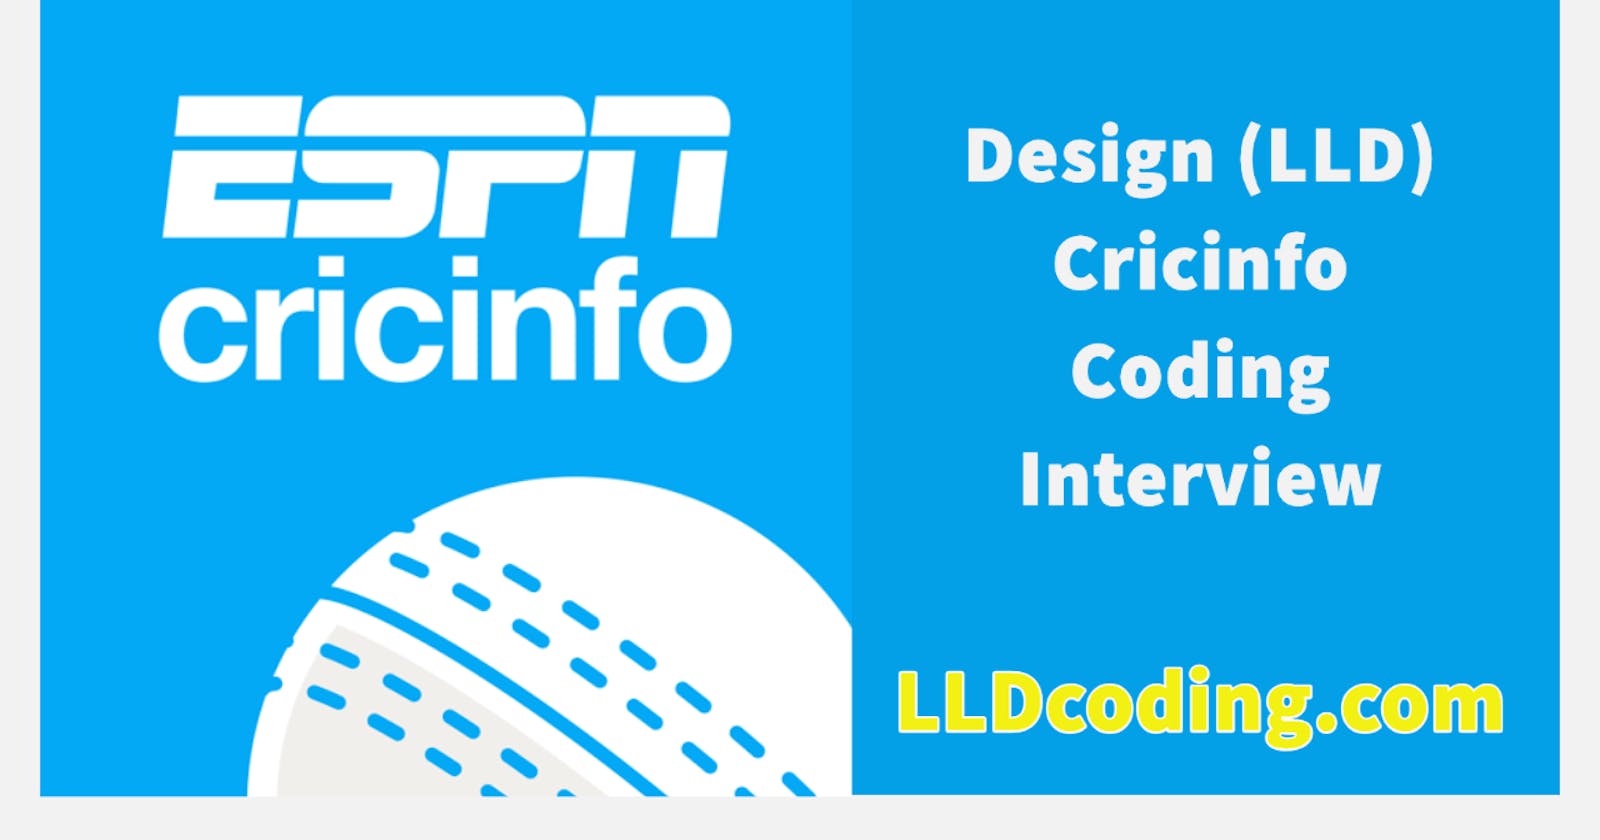 Design (LLD) Cricinfo - Machine Coding